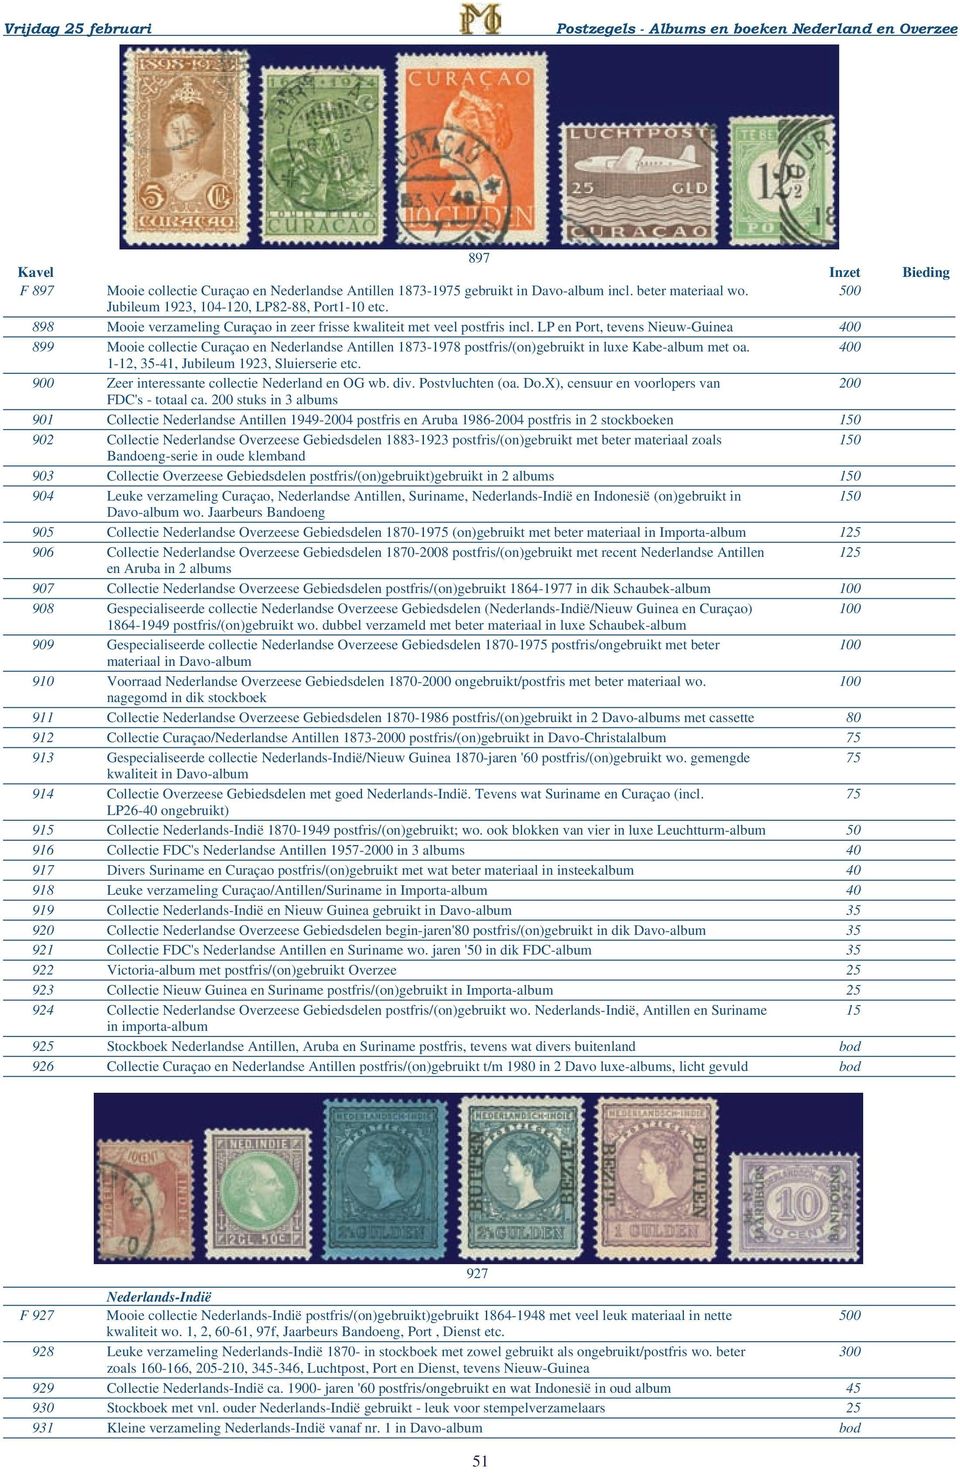 LP en Port, tevens Nieuw-Guinea 400 899 Mooie collectie Curaçao en Nederlandse Antillen 1873-1978 postfris/(on)gebruikt in luxe Kabe-album met oa. 400 1-12, 35-41, Jubileum 1923, Sluierserie etc.